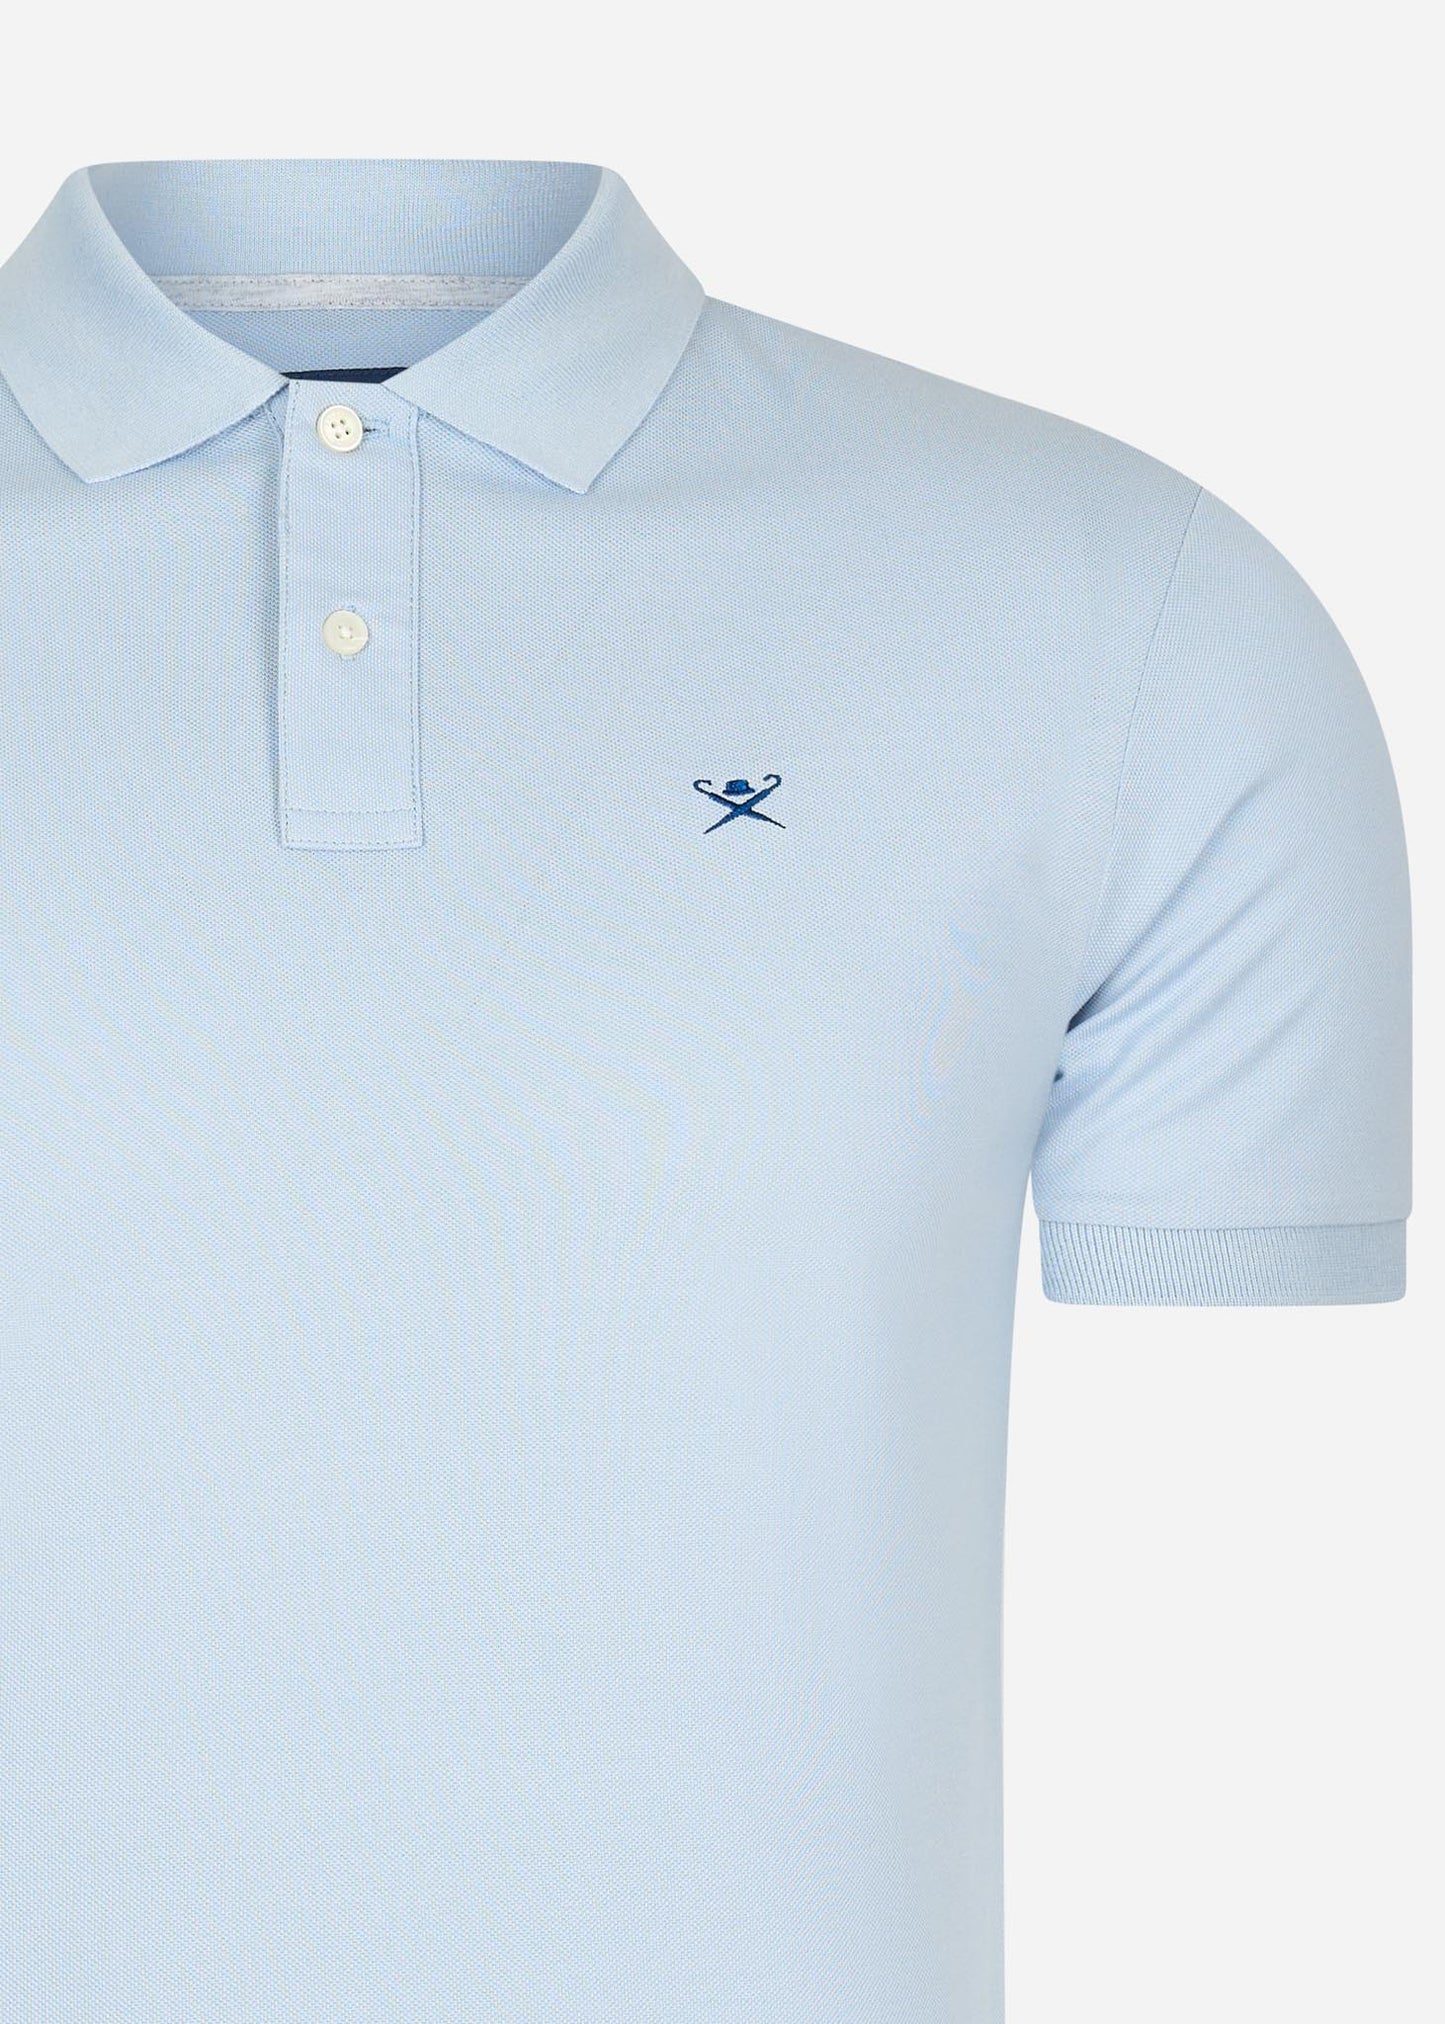 Hackett London Polo's  Cotton pique polo shirt - oxford blue 